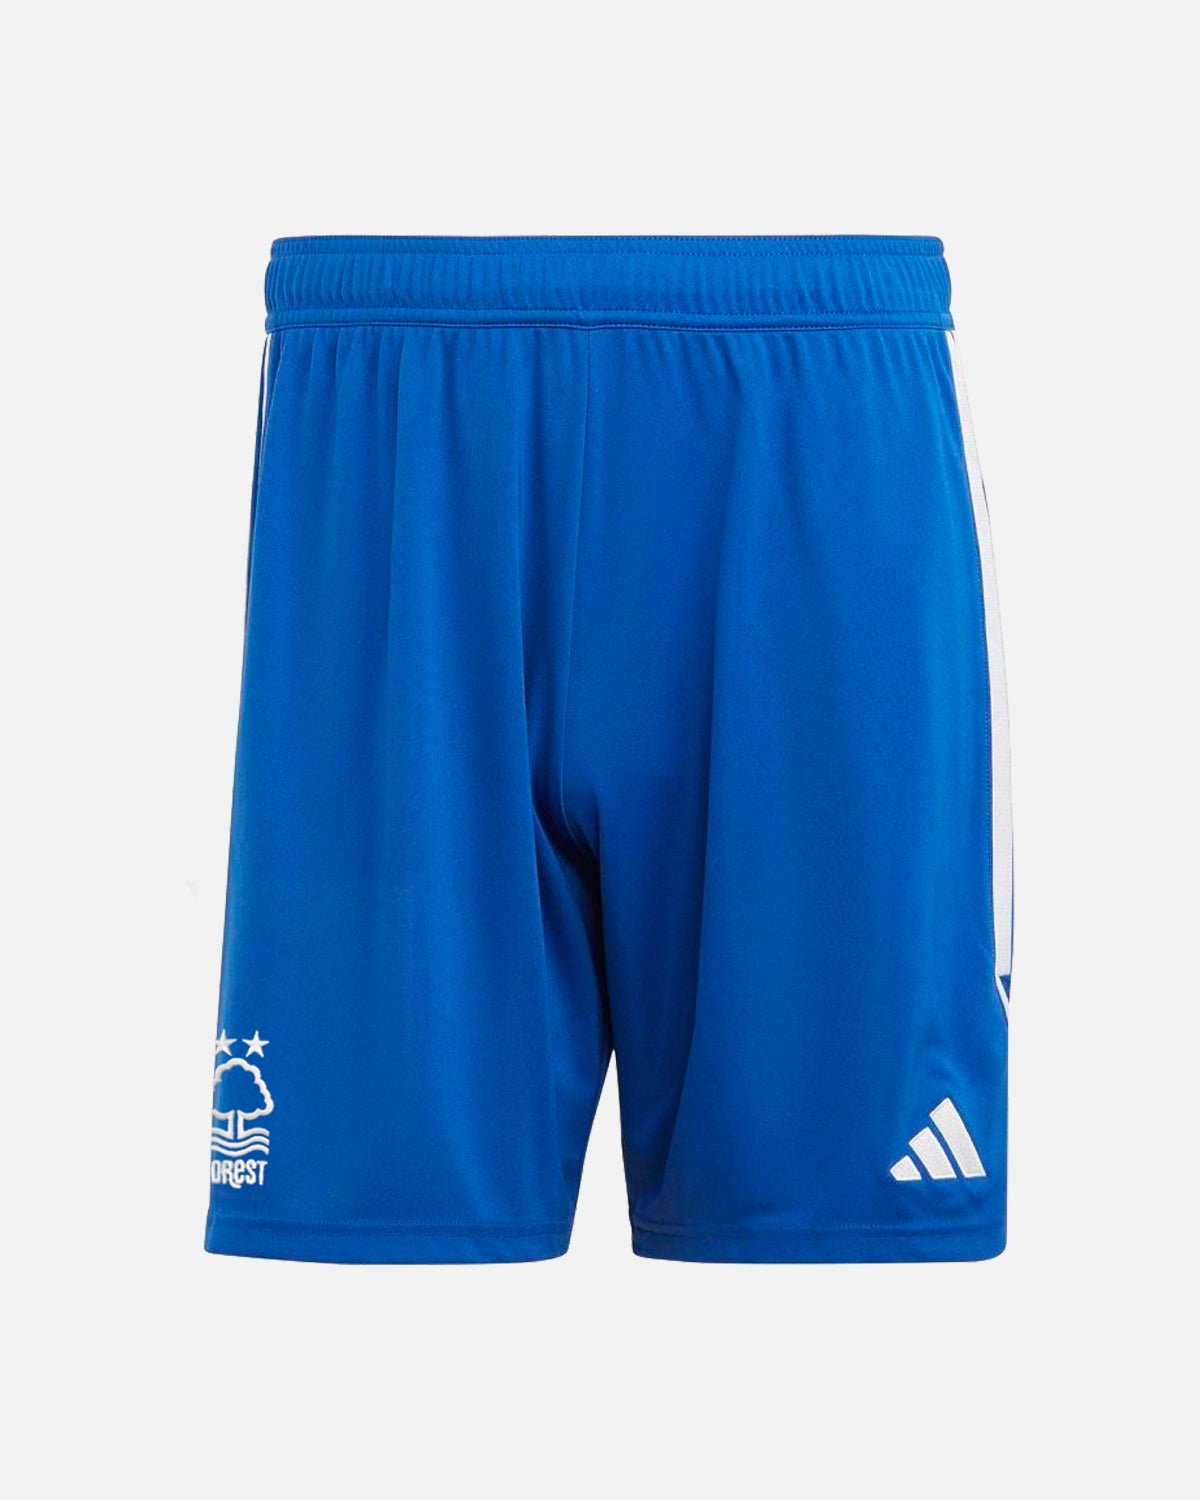 NFFC Blue Goalkeeper Shorts 23-24 - Nottingham Forest FC